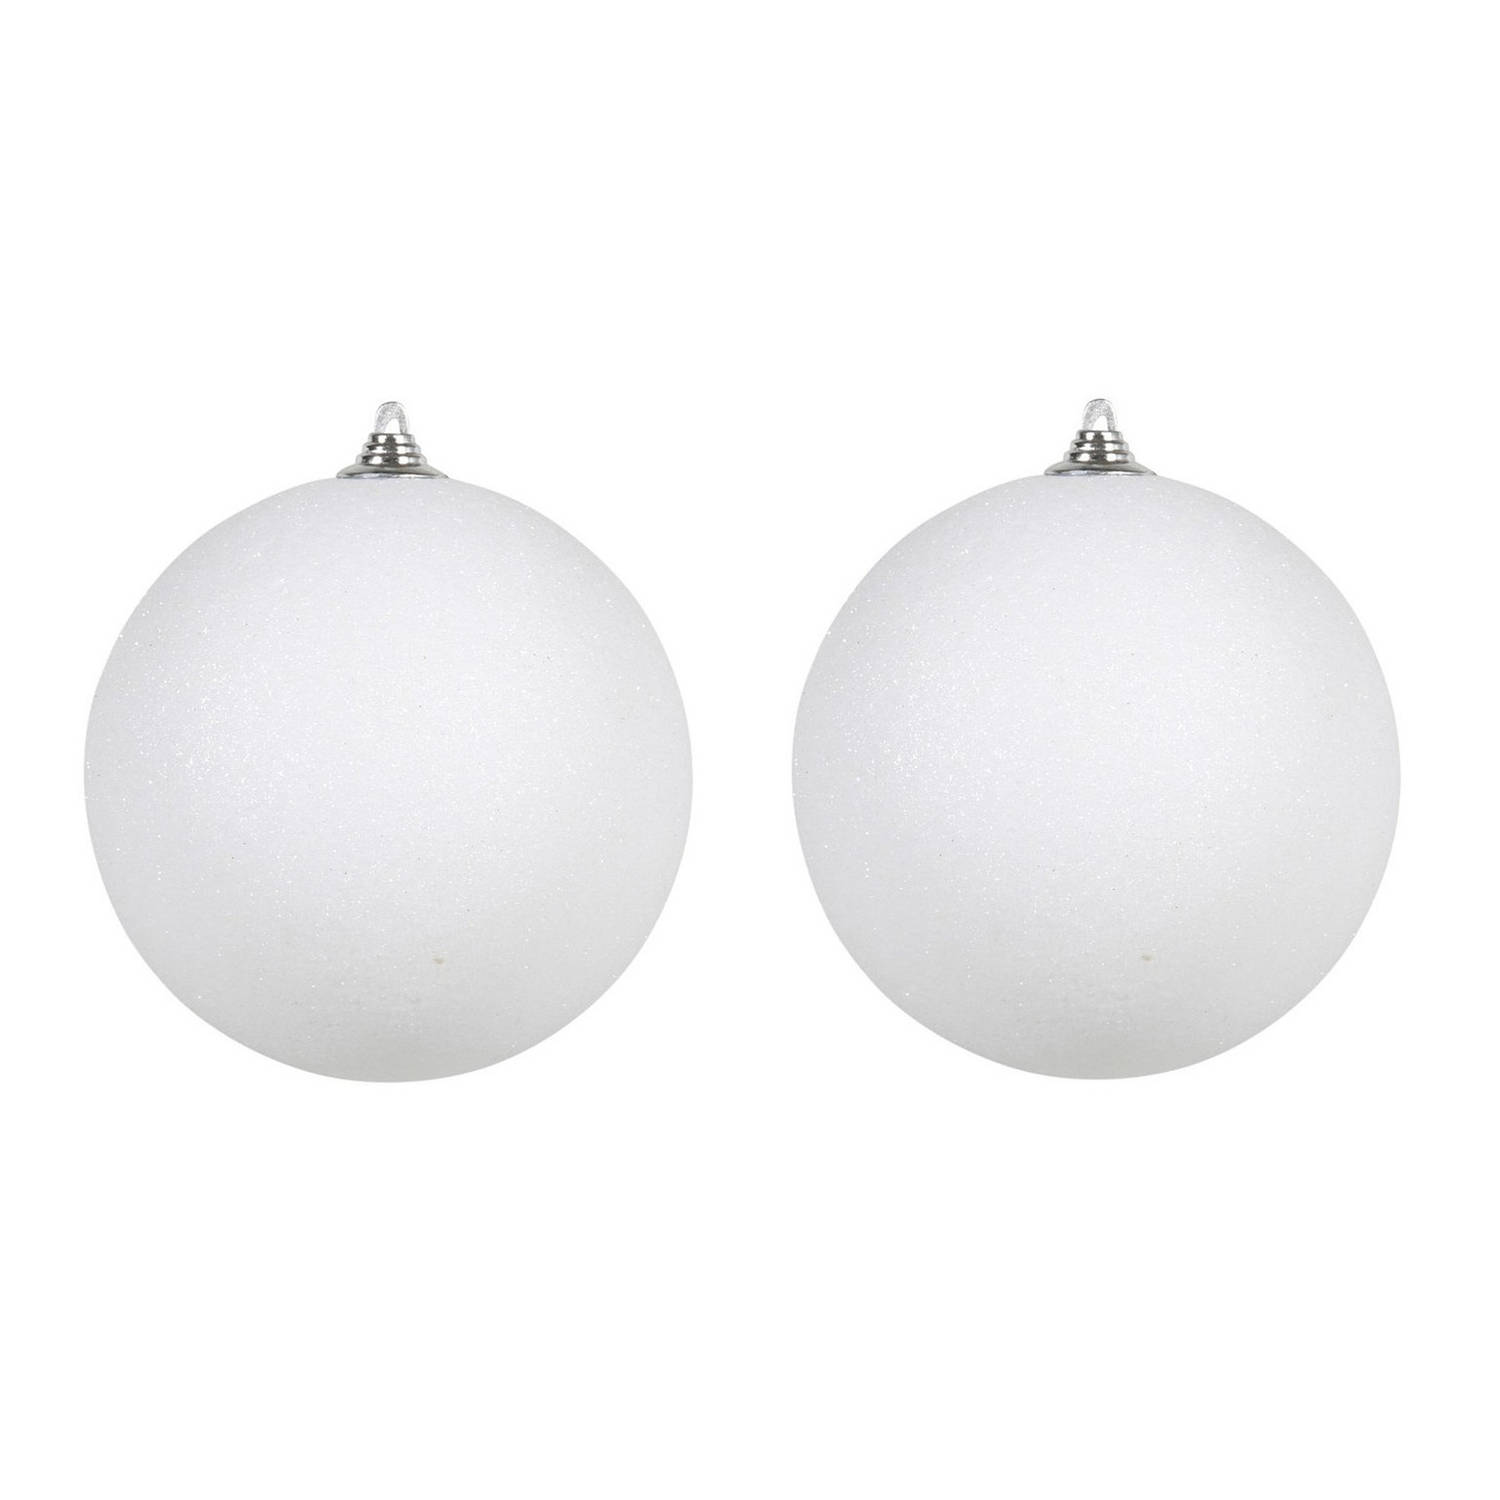 2x Witte Grote Glitter Kerstballen 18 Cm Hangdecoratie-Boomversiering Glitter Kerstballen